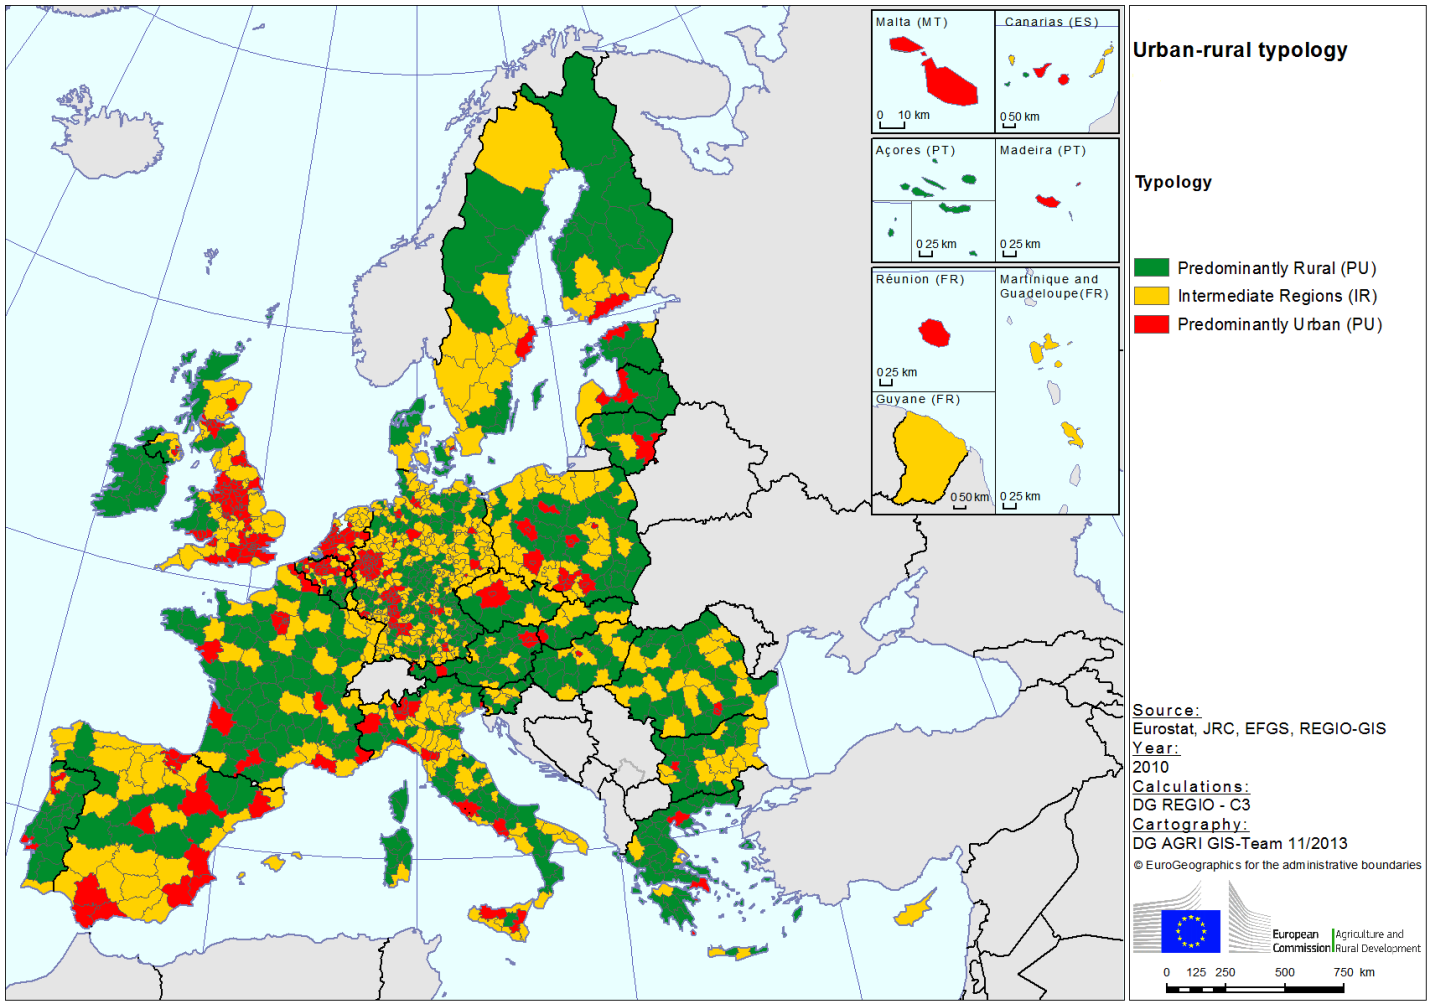 Υάξηεο 2: Απνηχπσζε Γεσξγηθψλ Αζηηθψλ εθηάζεσλ Πεγή: http://ec.europa.eu/agriculture/index_en.